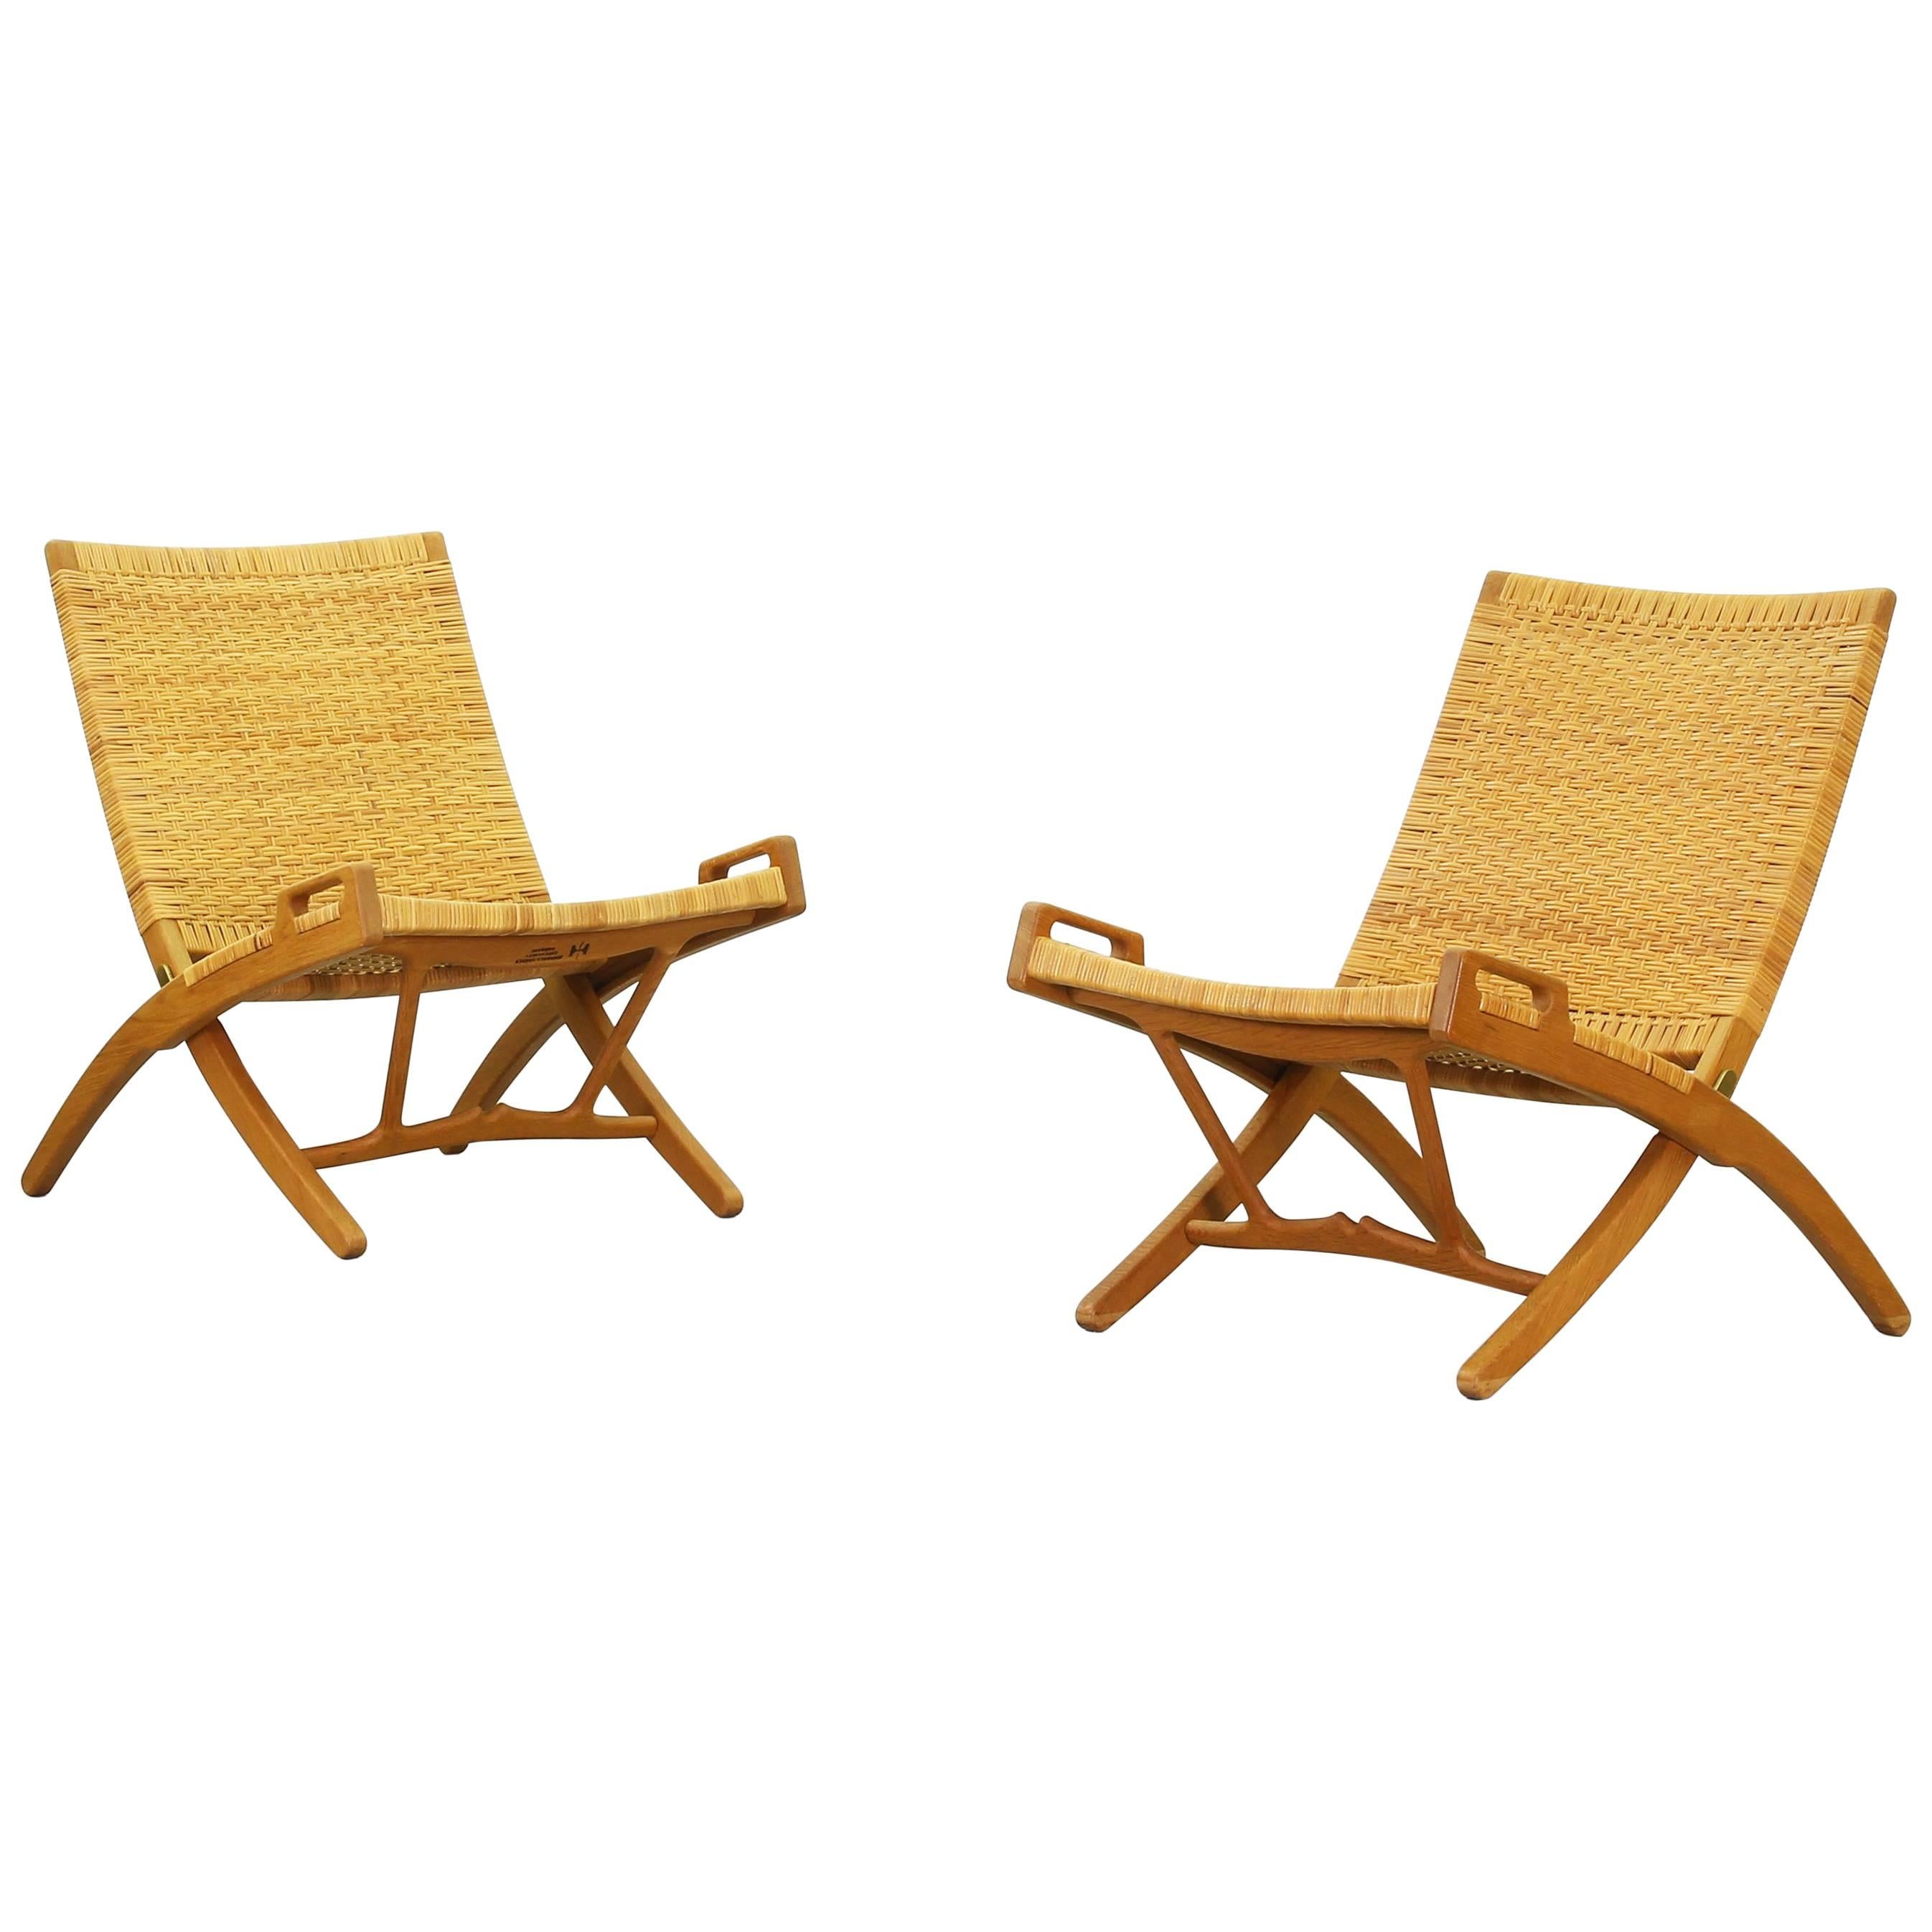 Pair of Folding Lounge Chairs by Hans J. Wegner for Johannes Hansen